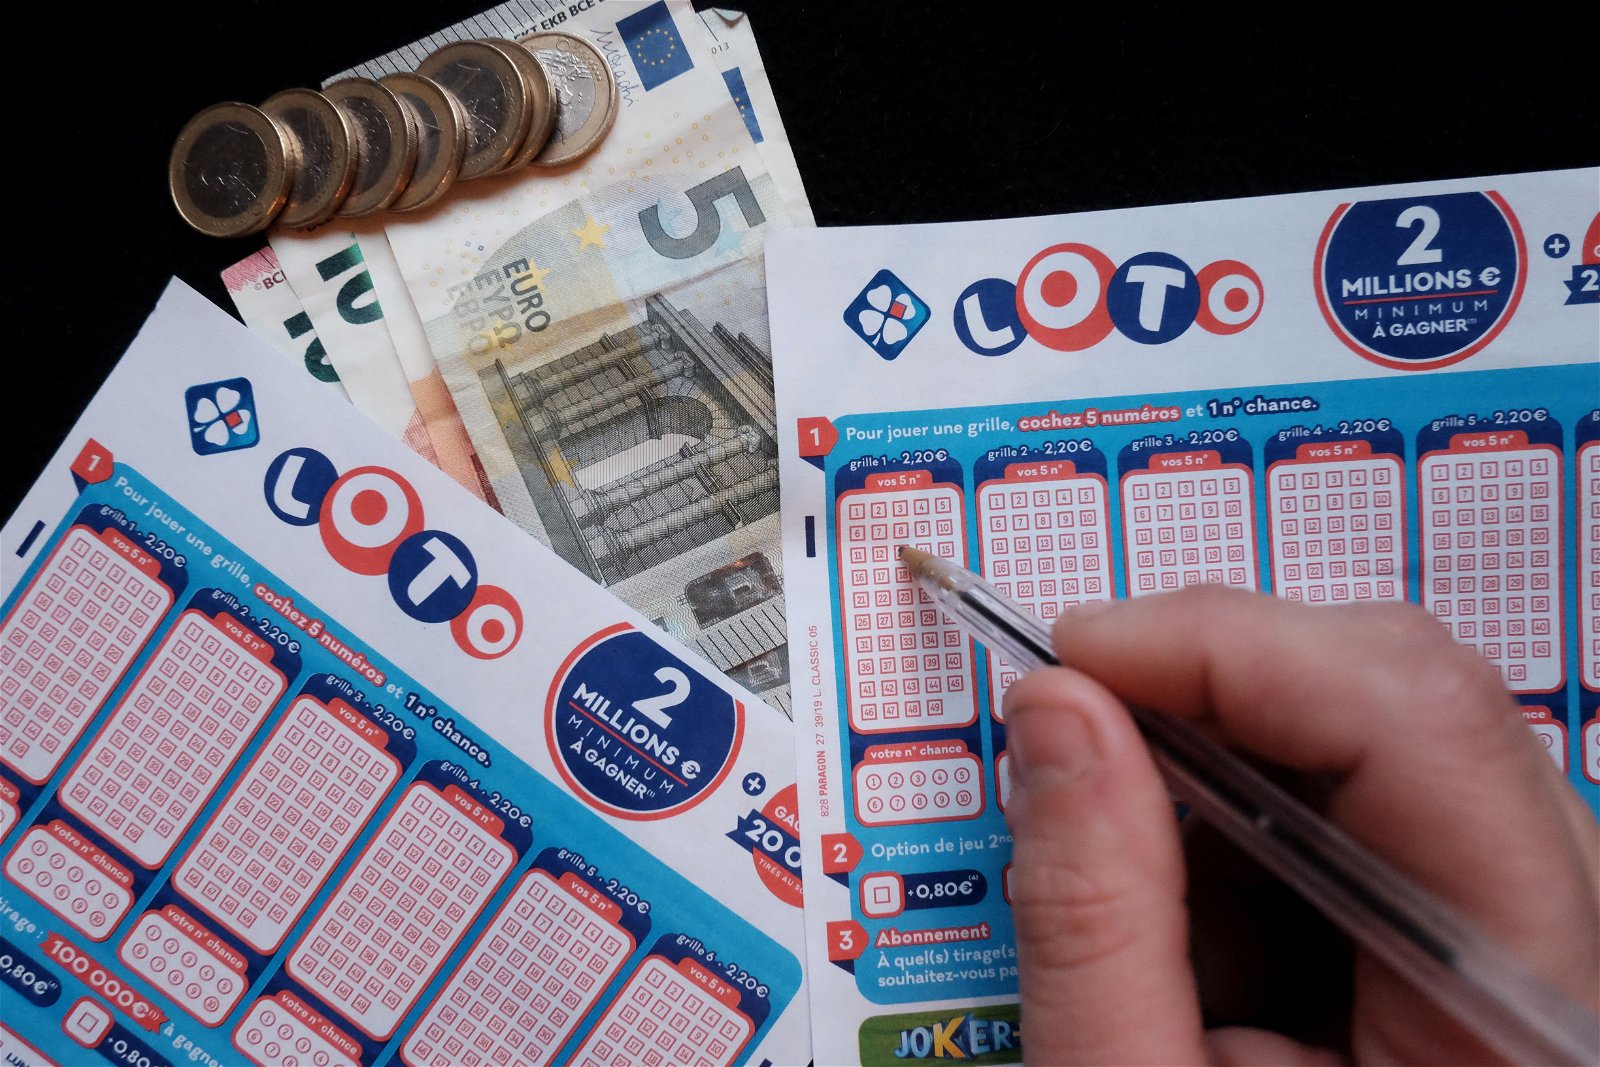 Dader bleek Scherm Lotto winnen: welke cijfers moet je zeker niet gebruiken? - Business AM